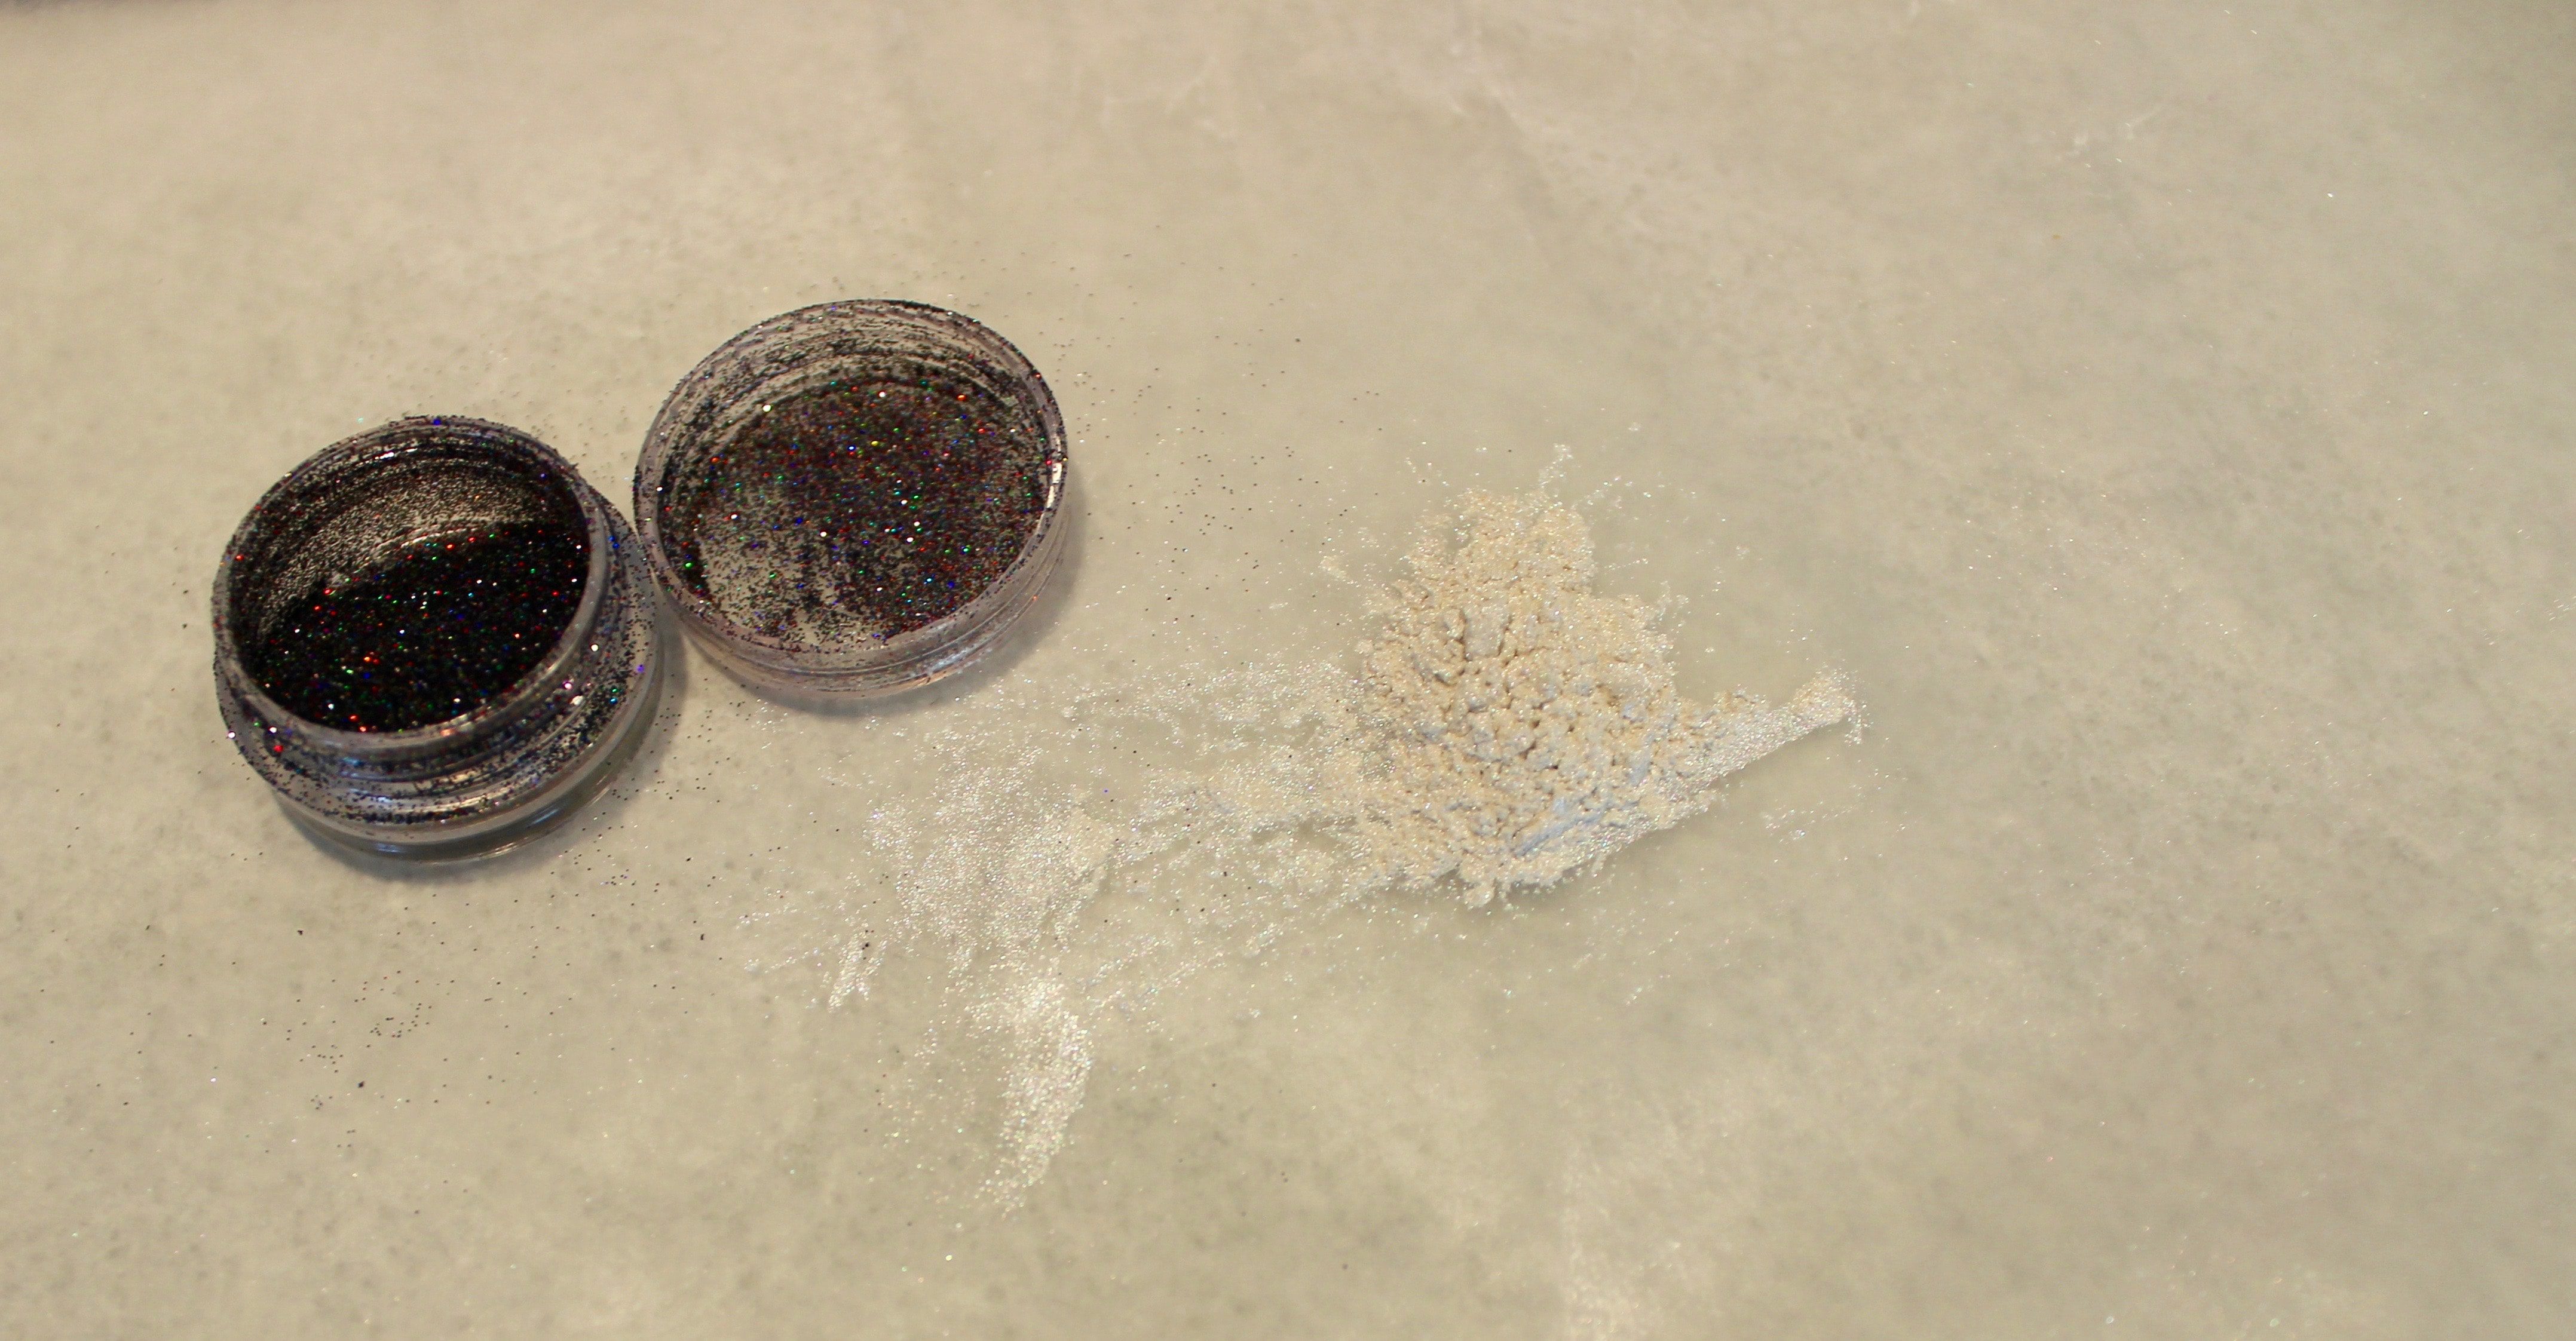 Fine glitter and pearl colorant powder